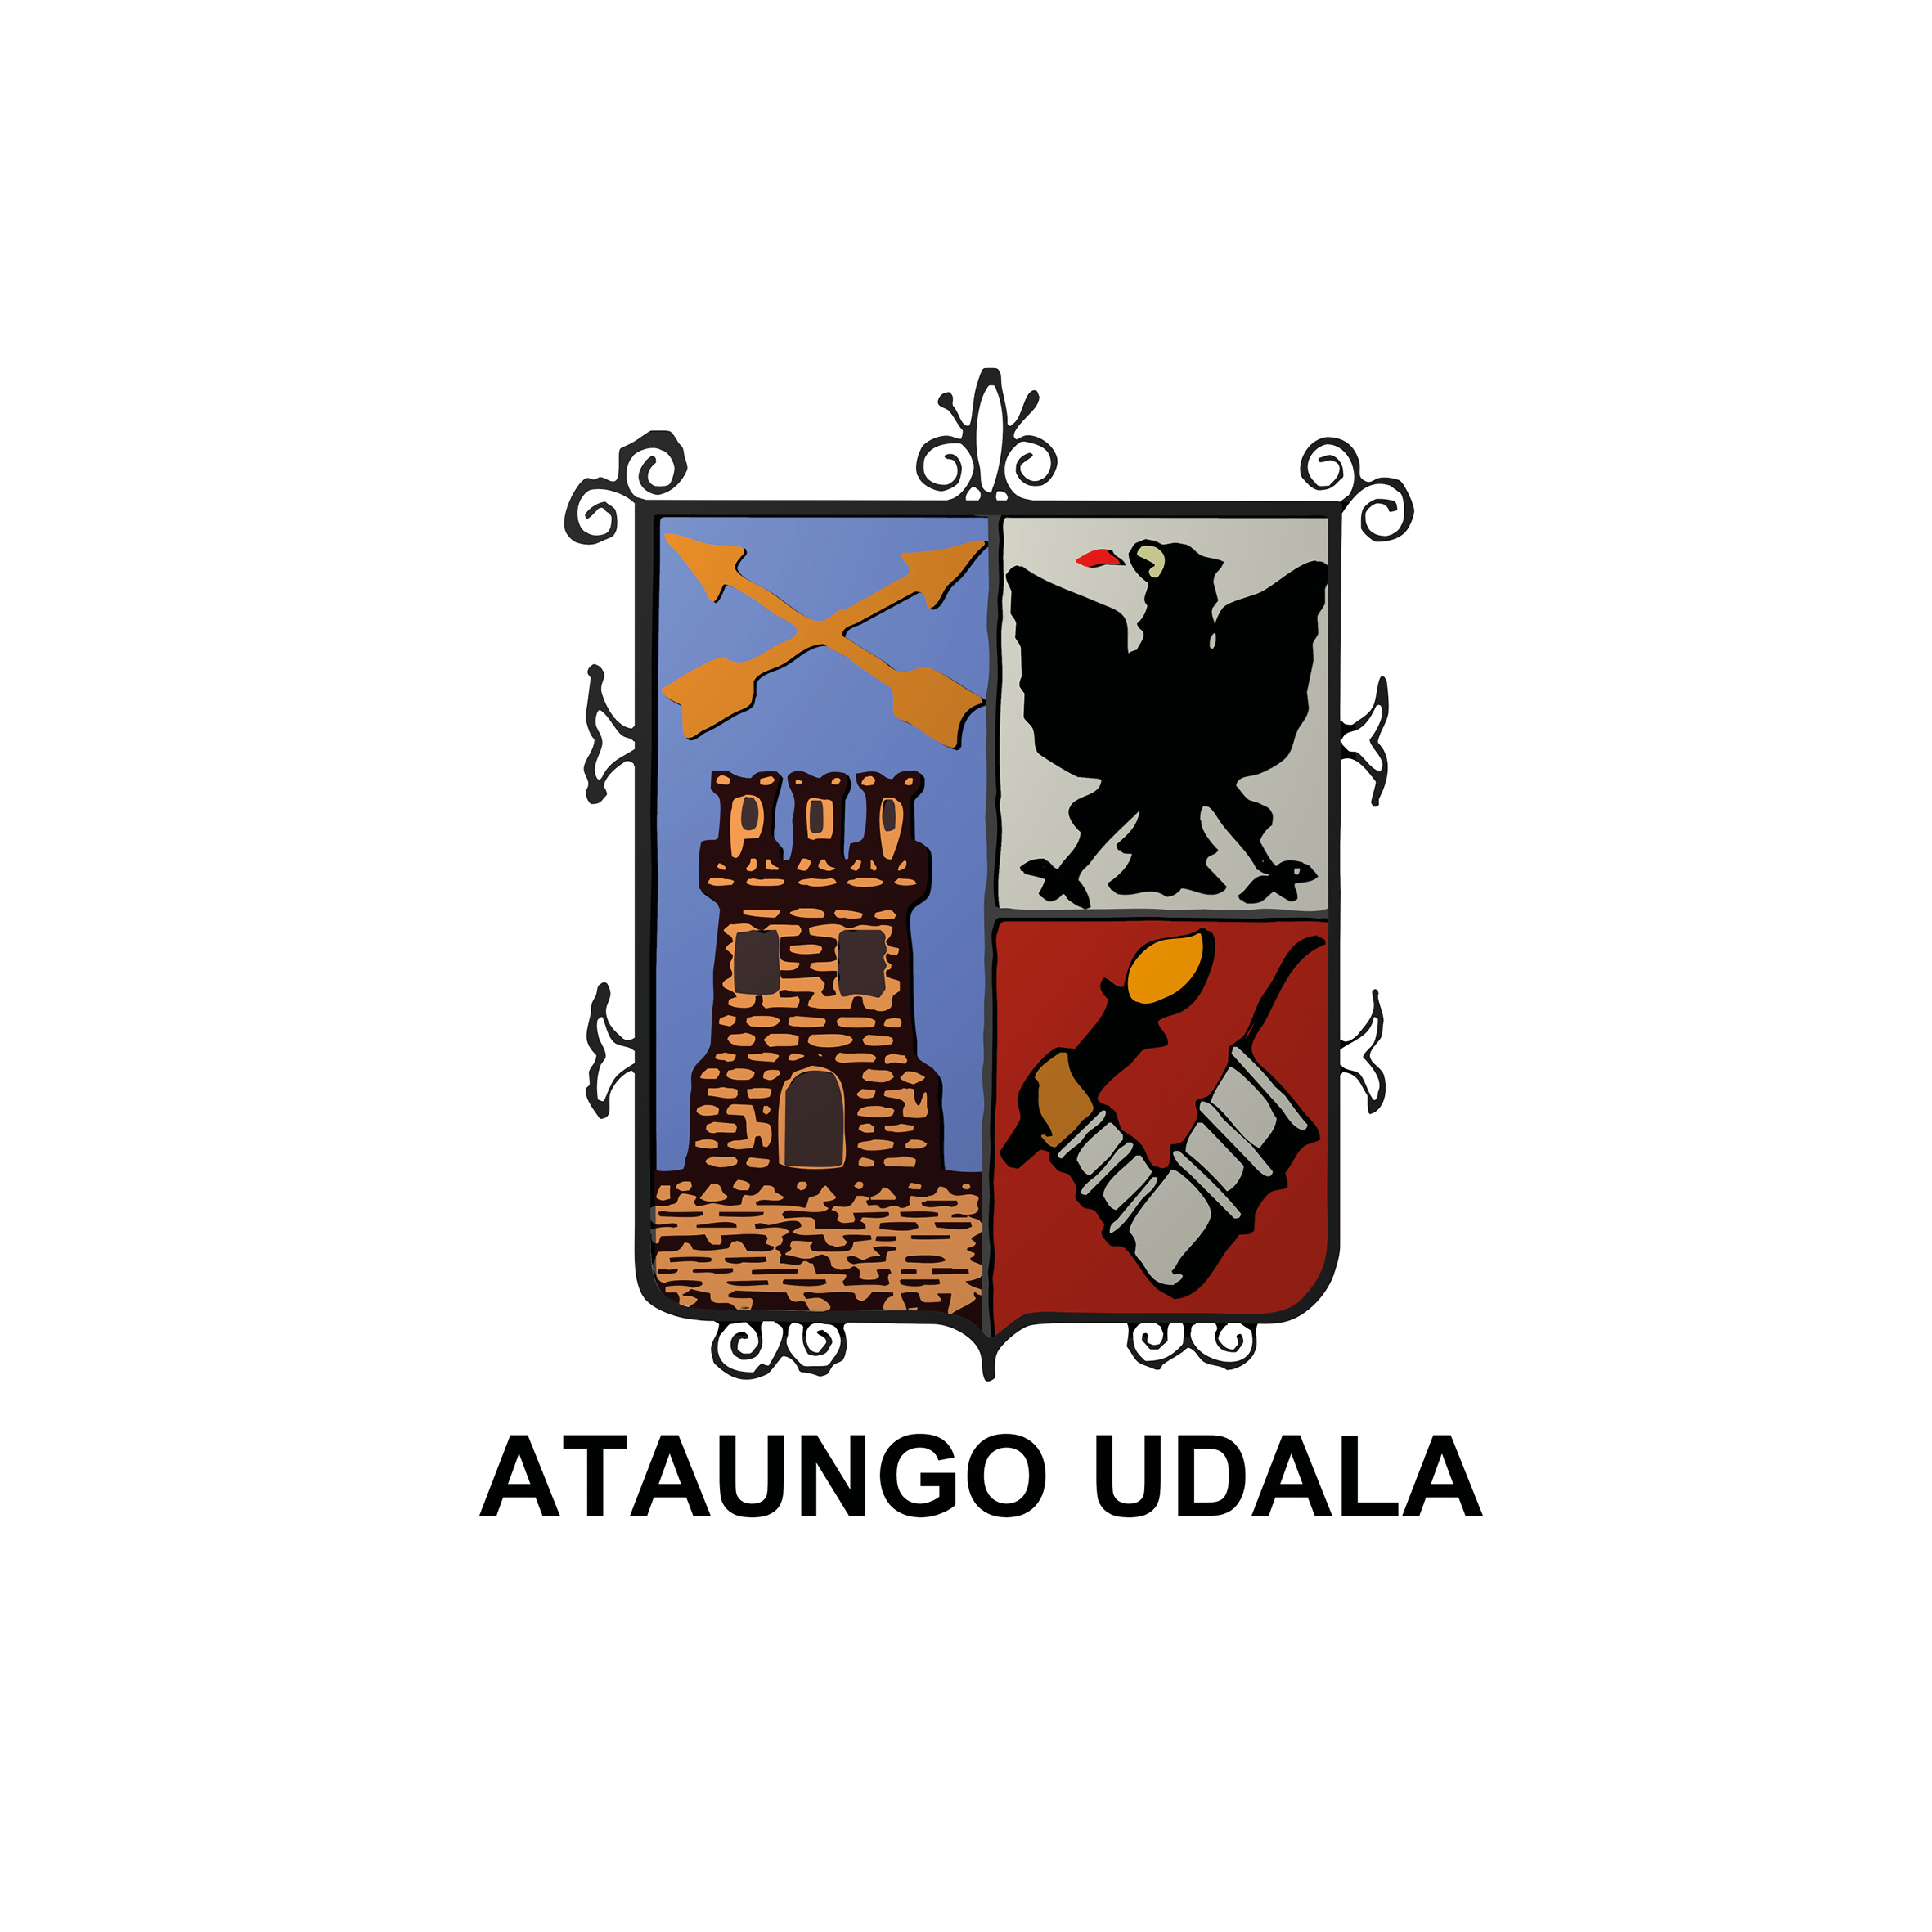 Ataungo Udala